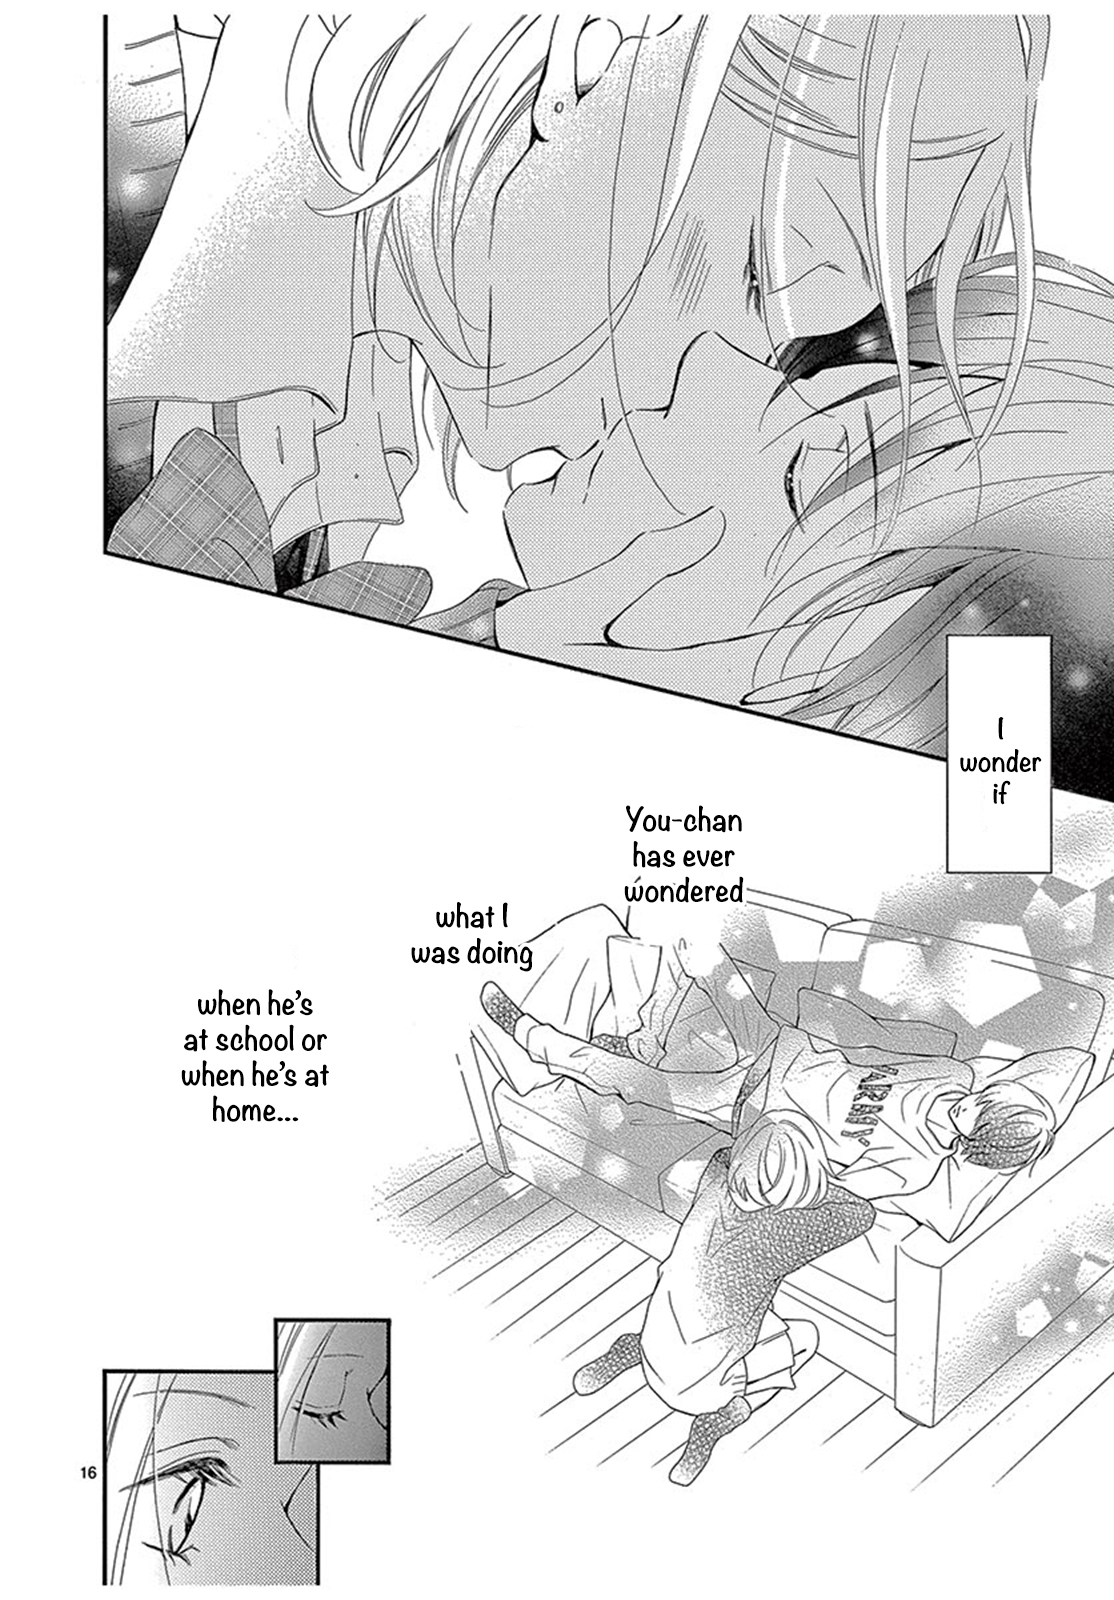 100 Man kai no Suki o Ageru Vol. 1 Ch. 4